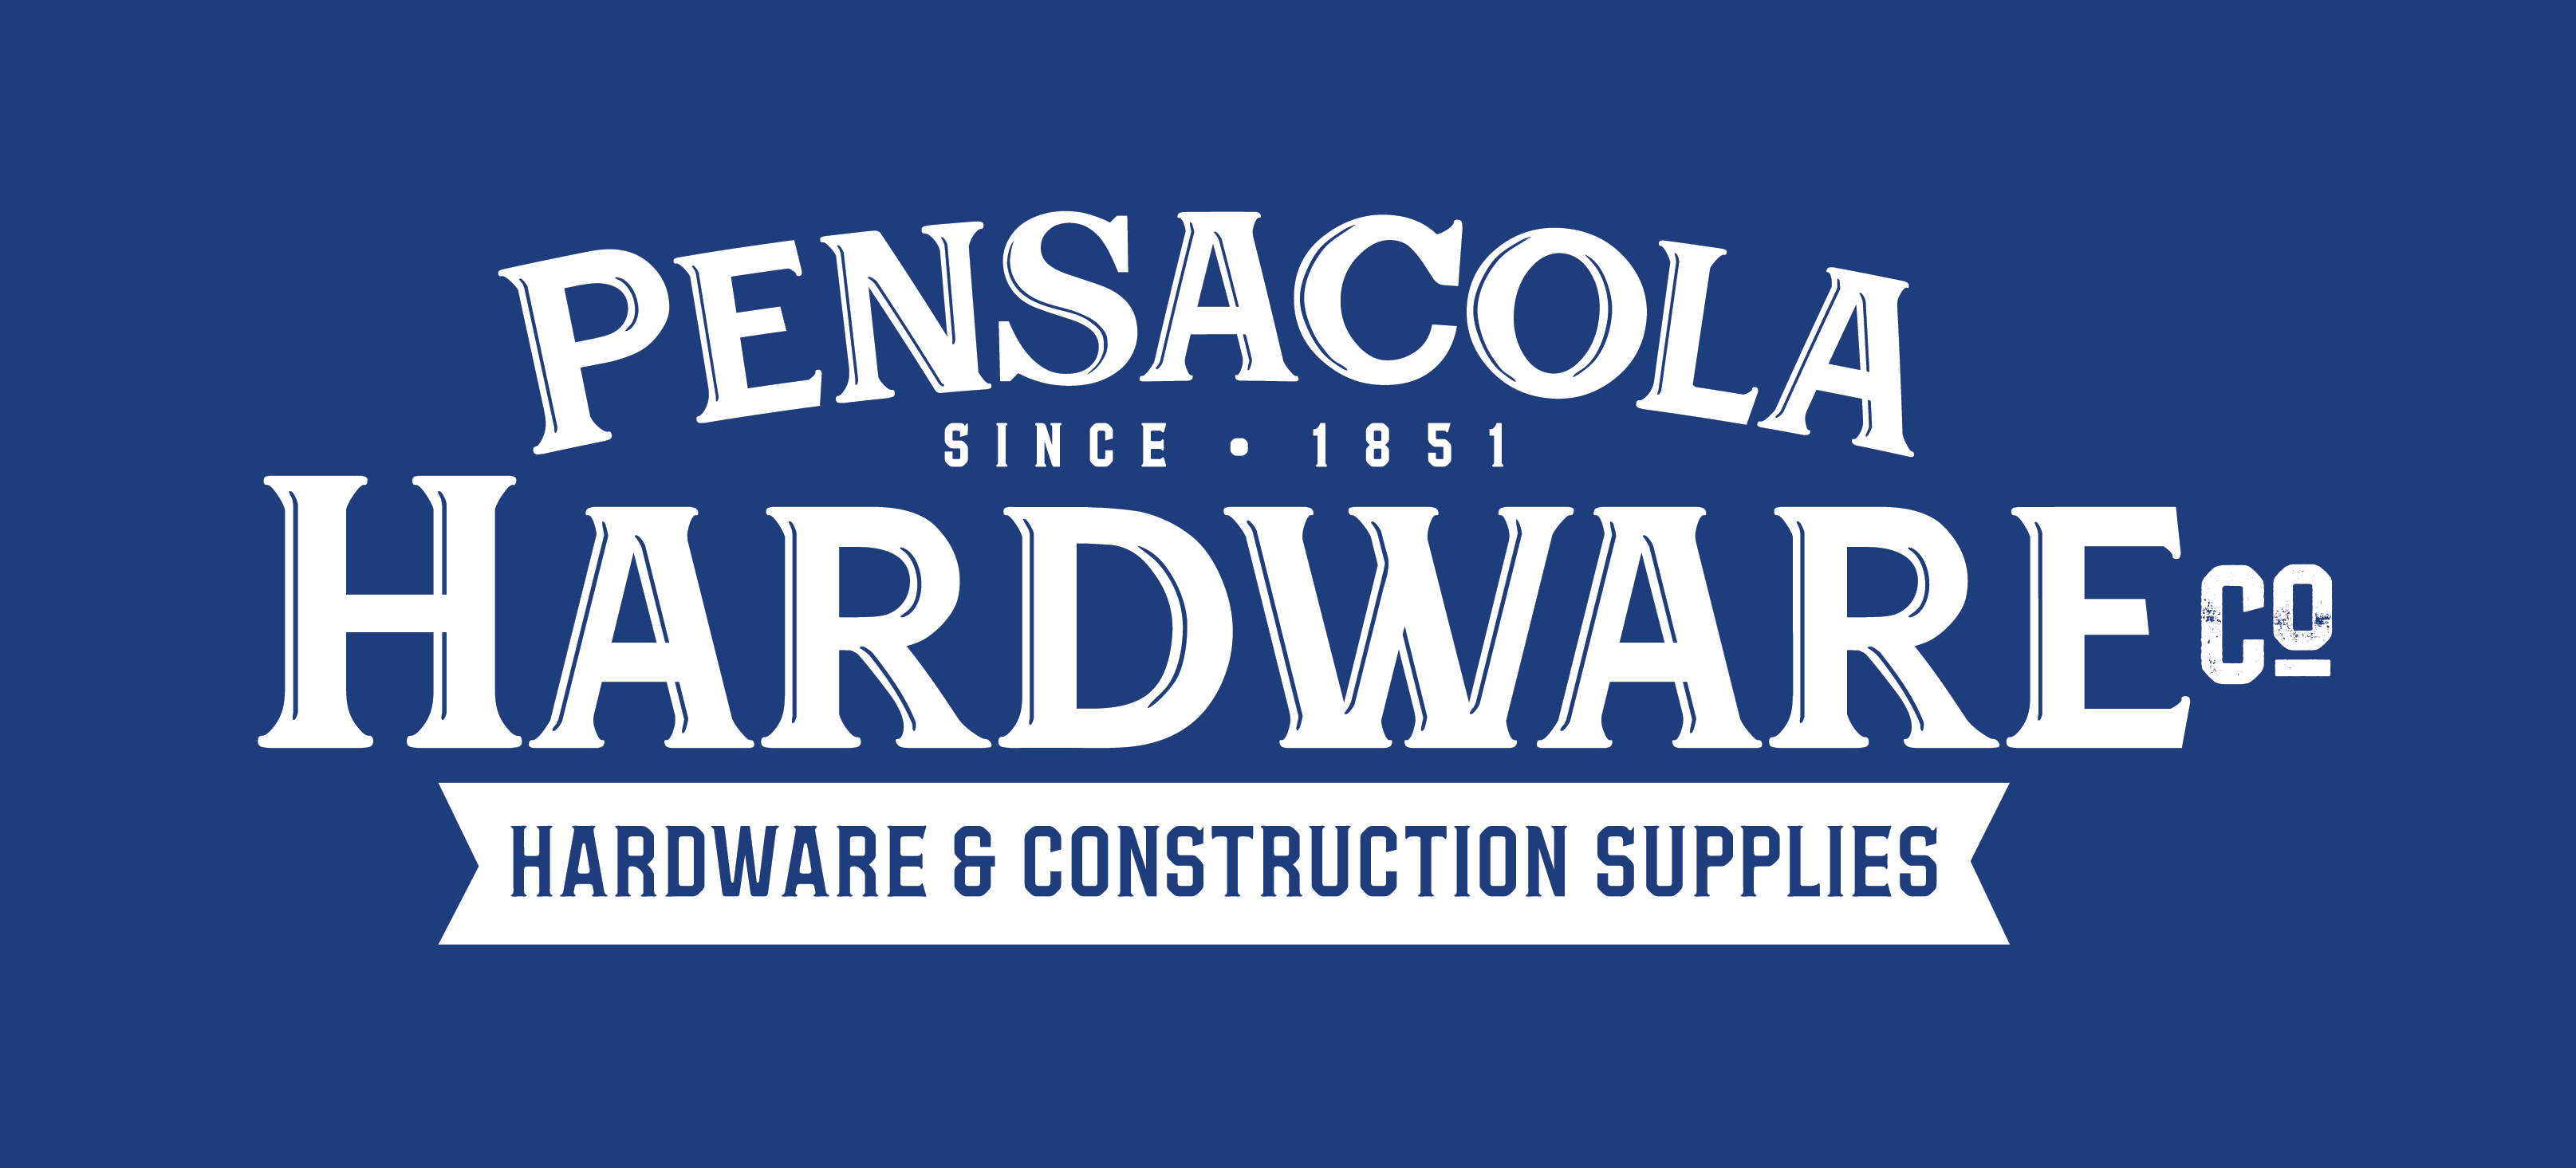 Pensacola Hardware